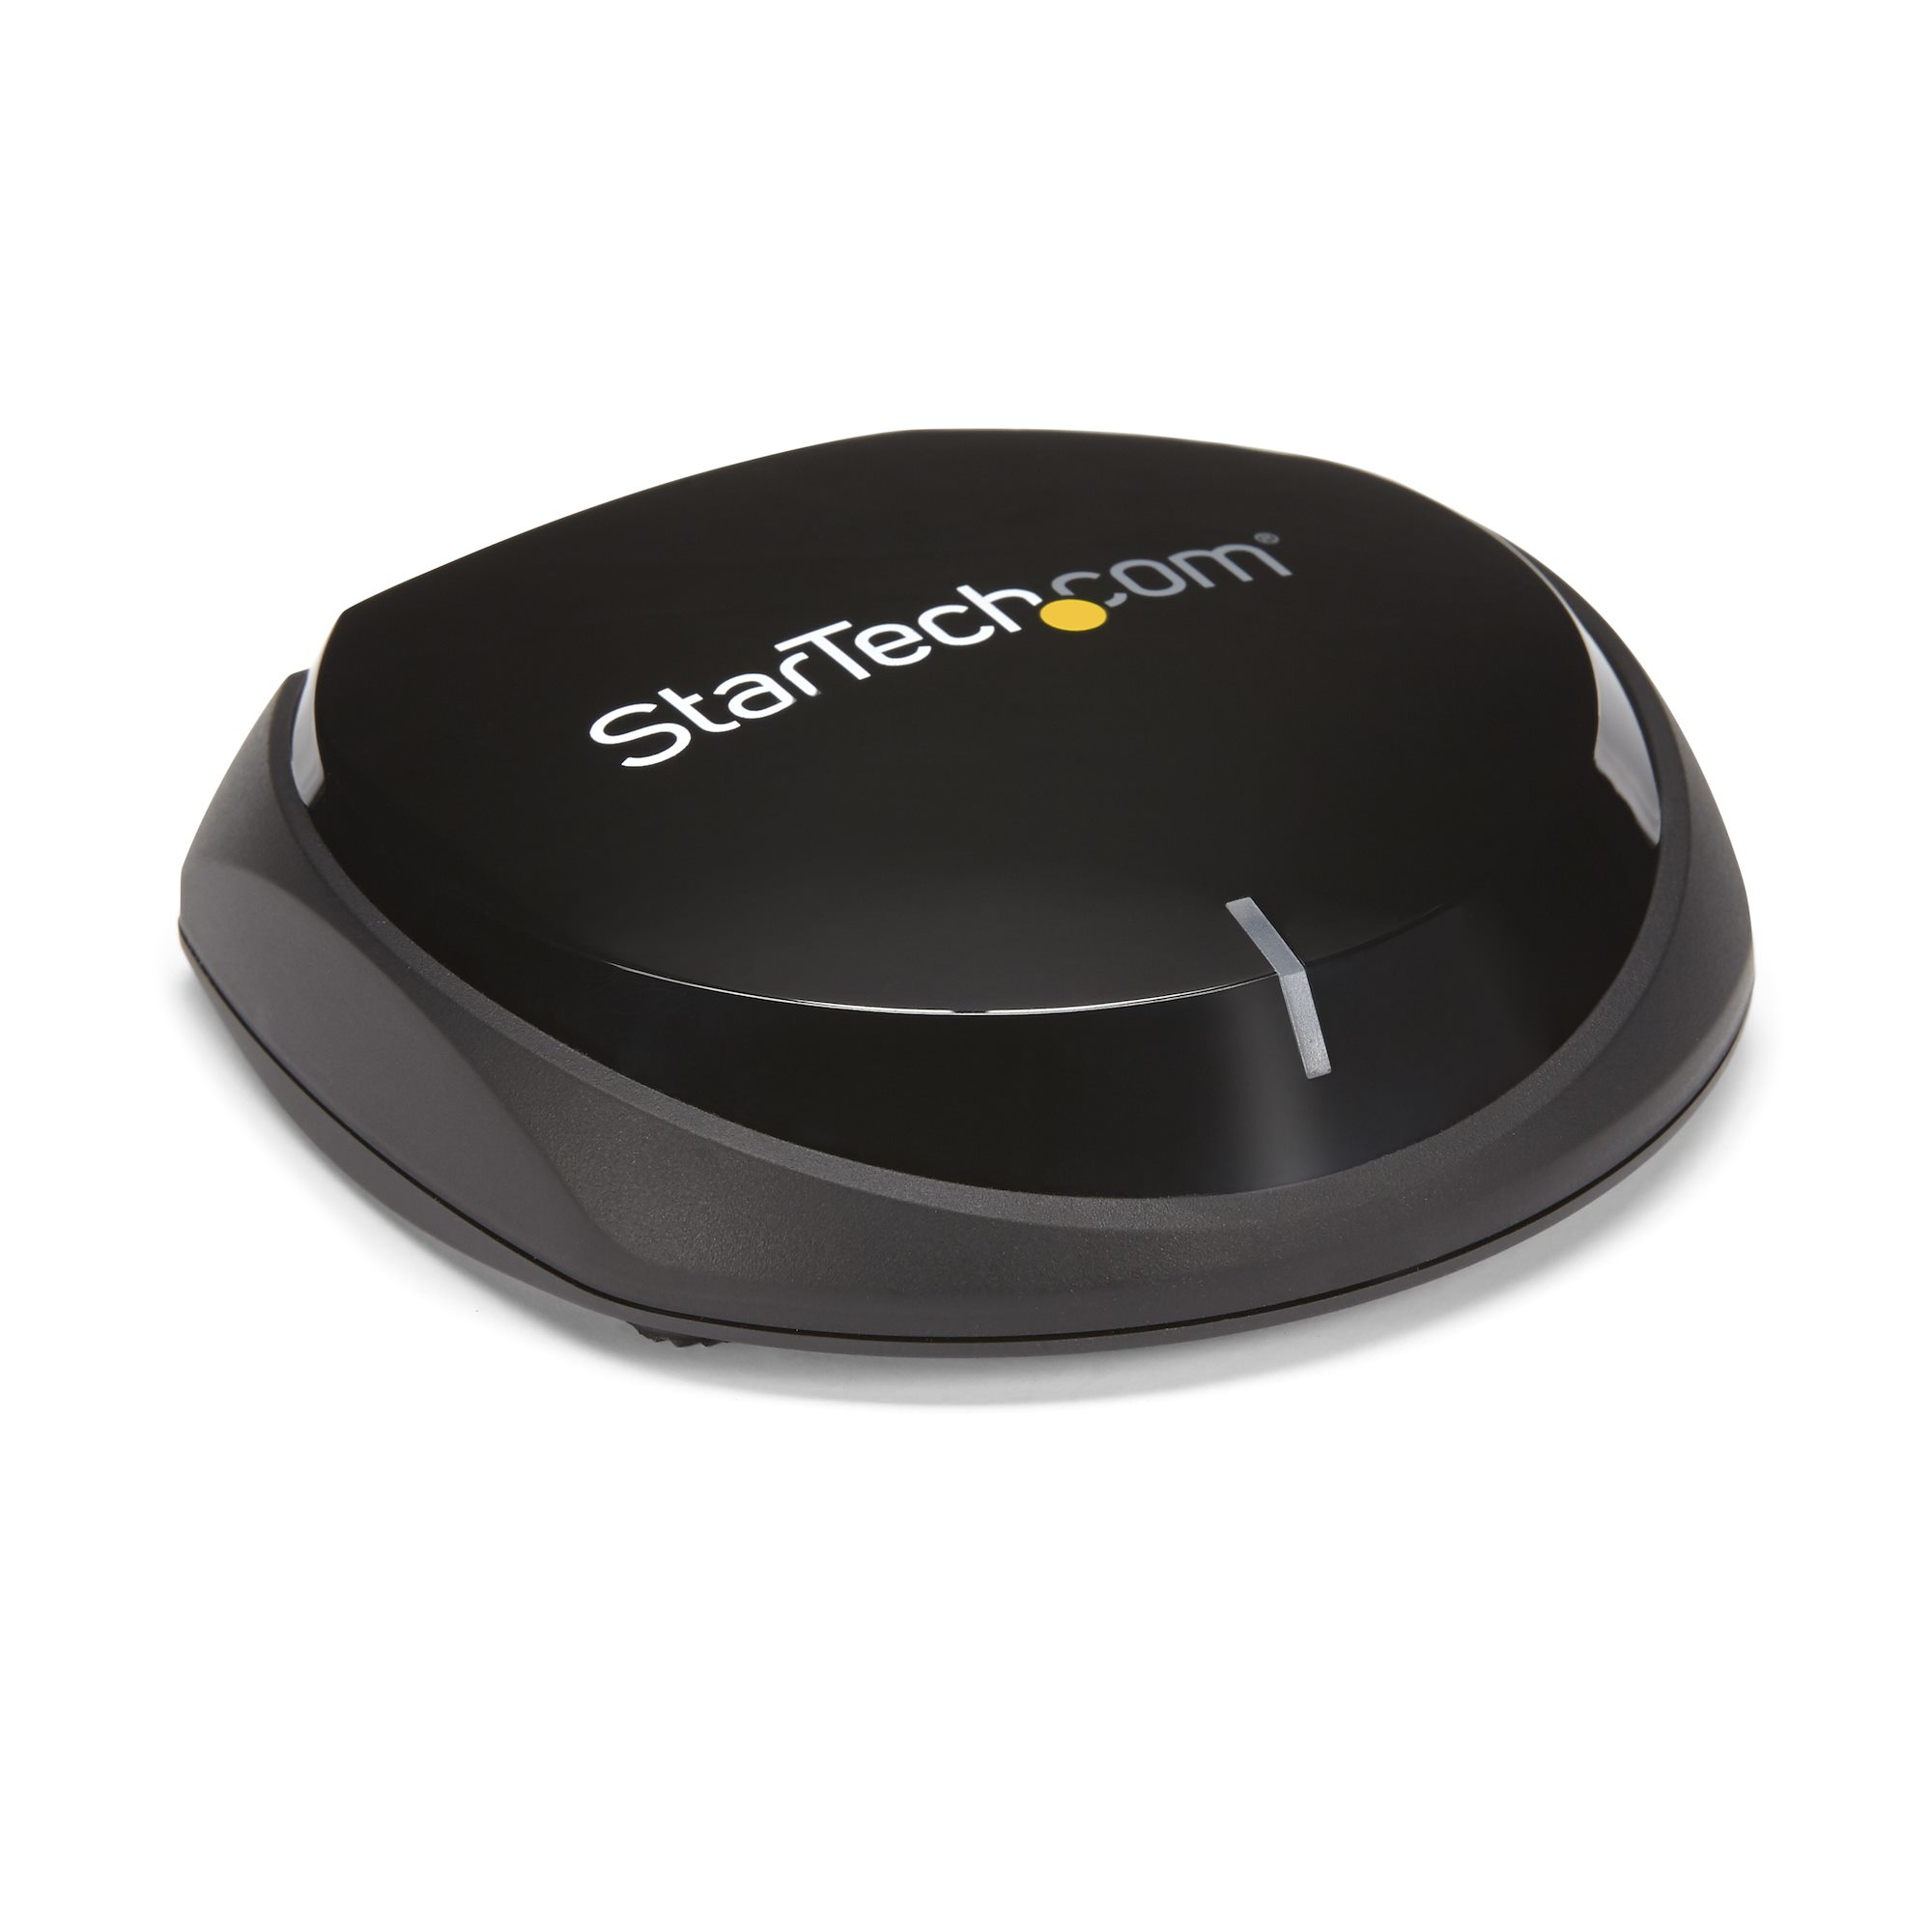 StarTech.com Bluetooth 5.0-ljudmottagare med NFC - Trådlös Bluetooth-ljudadapter BT 5.0 - 20 m räckvidd - 3,5 mm/RCA eller digital Toslink/SPDIF-optisk utgång - Förlustfri HiFi Wolfson DAC